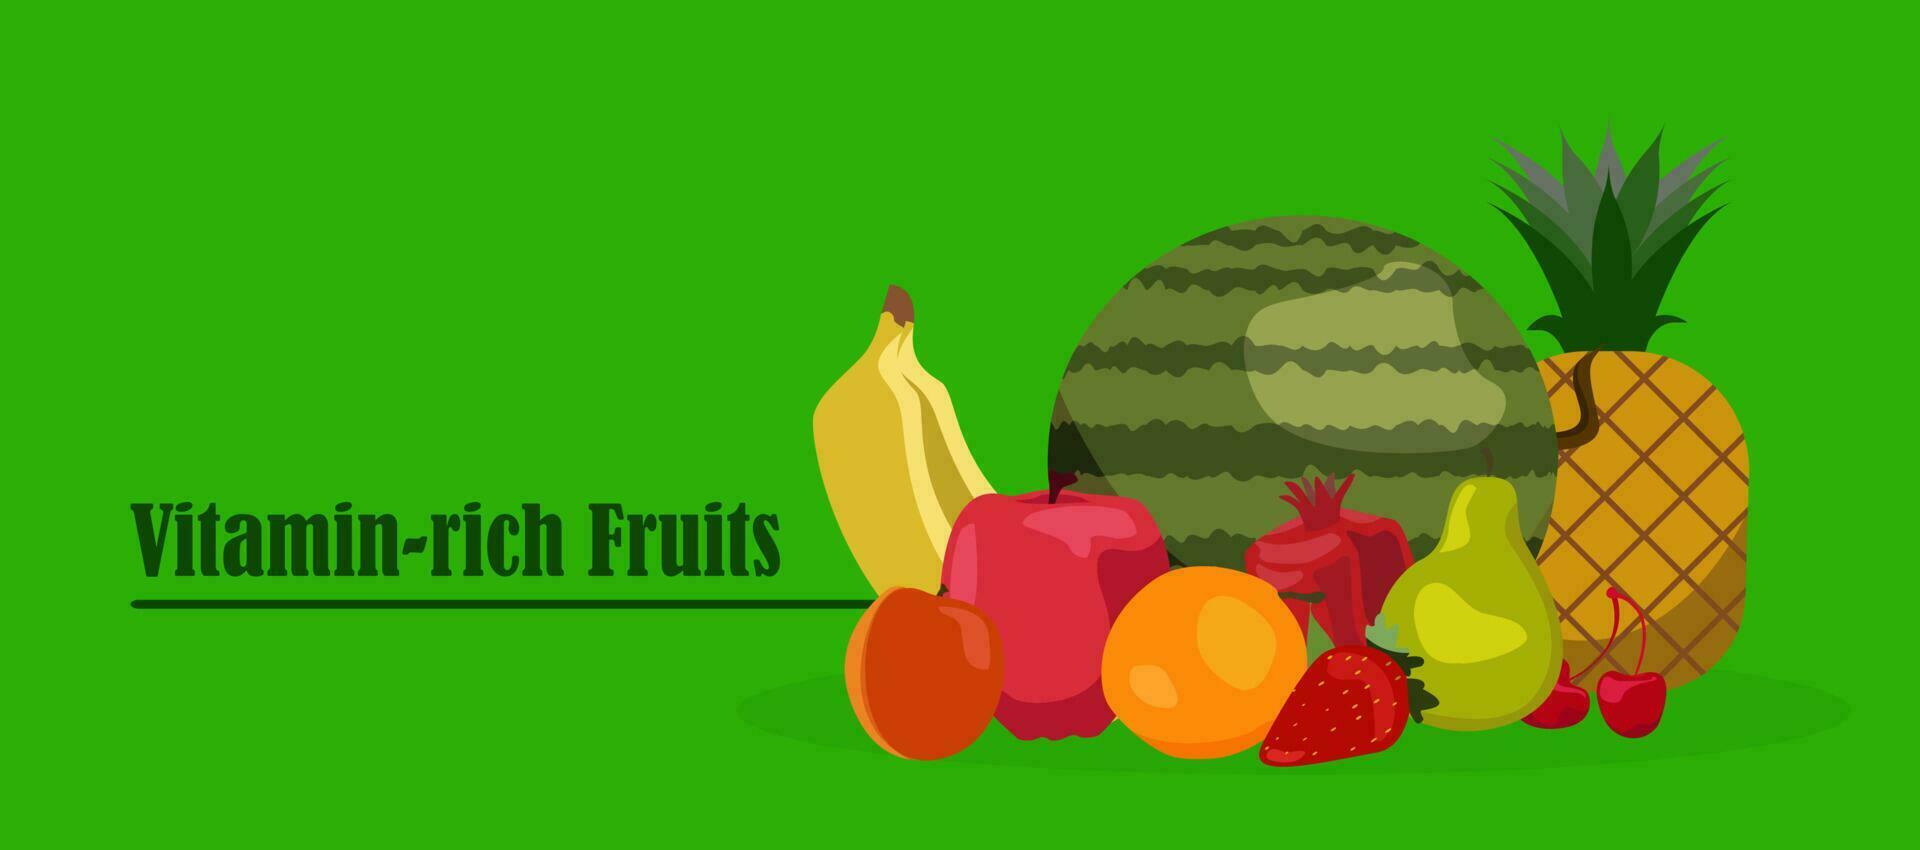 biologico salutare concetto con fresco frutta. vettore impostare. fragole, Banana, Melograno, ananas, mela, arancia, anguria albicocca Pera ciliegia estate